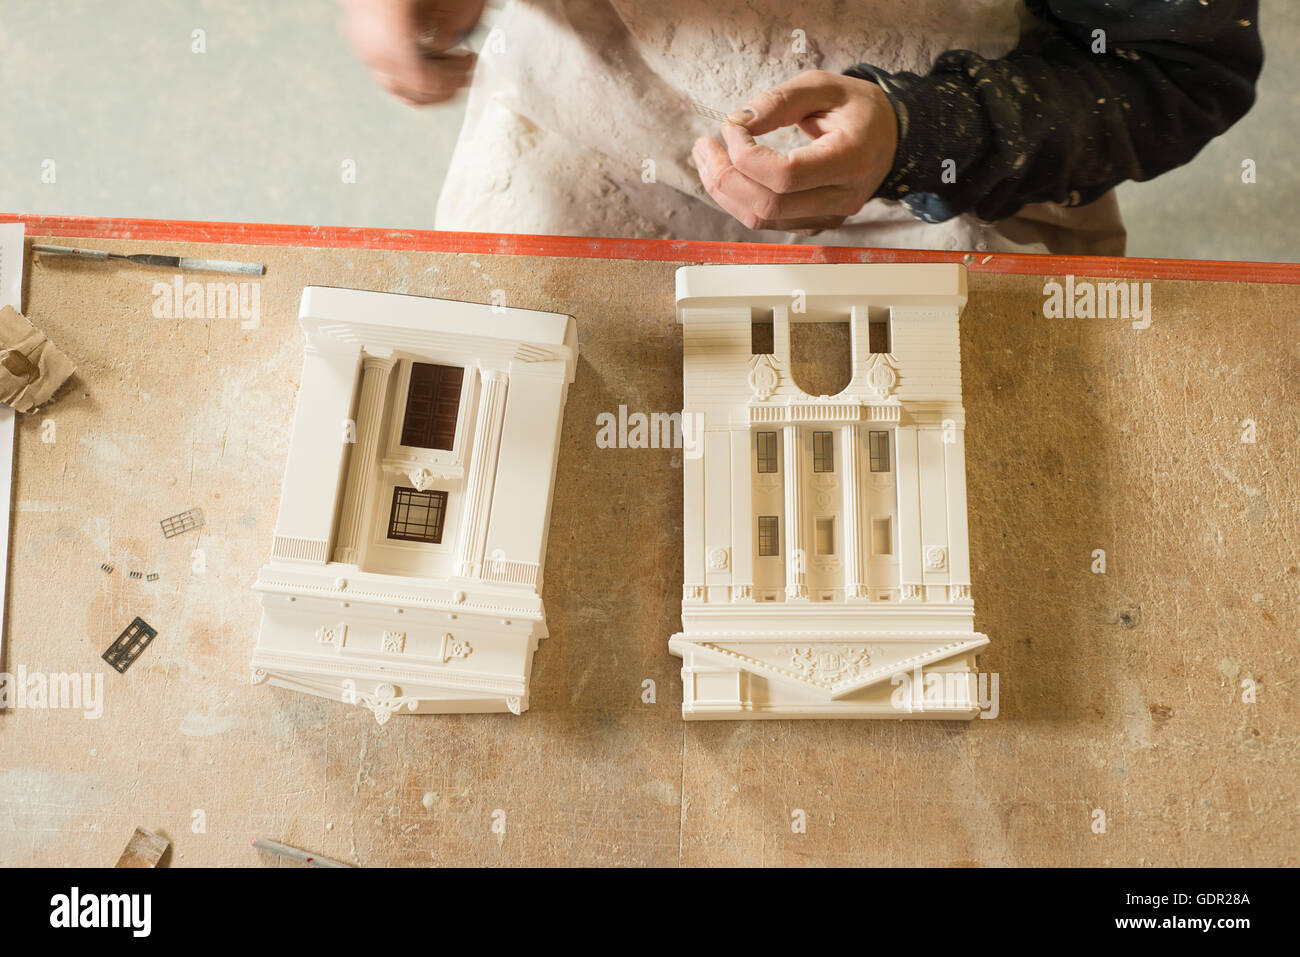 Passage de deux bâtiments modèle à l'échelle de plâtre et de leurs pièces sur une table en bois avec une personne assise à côté d'eux. Banque D'Images